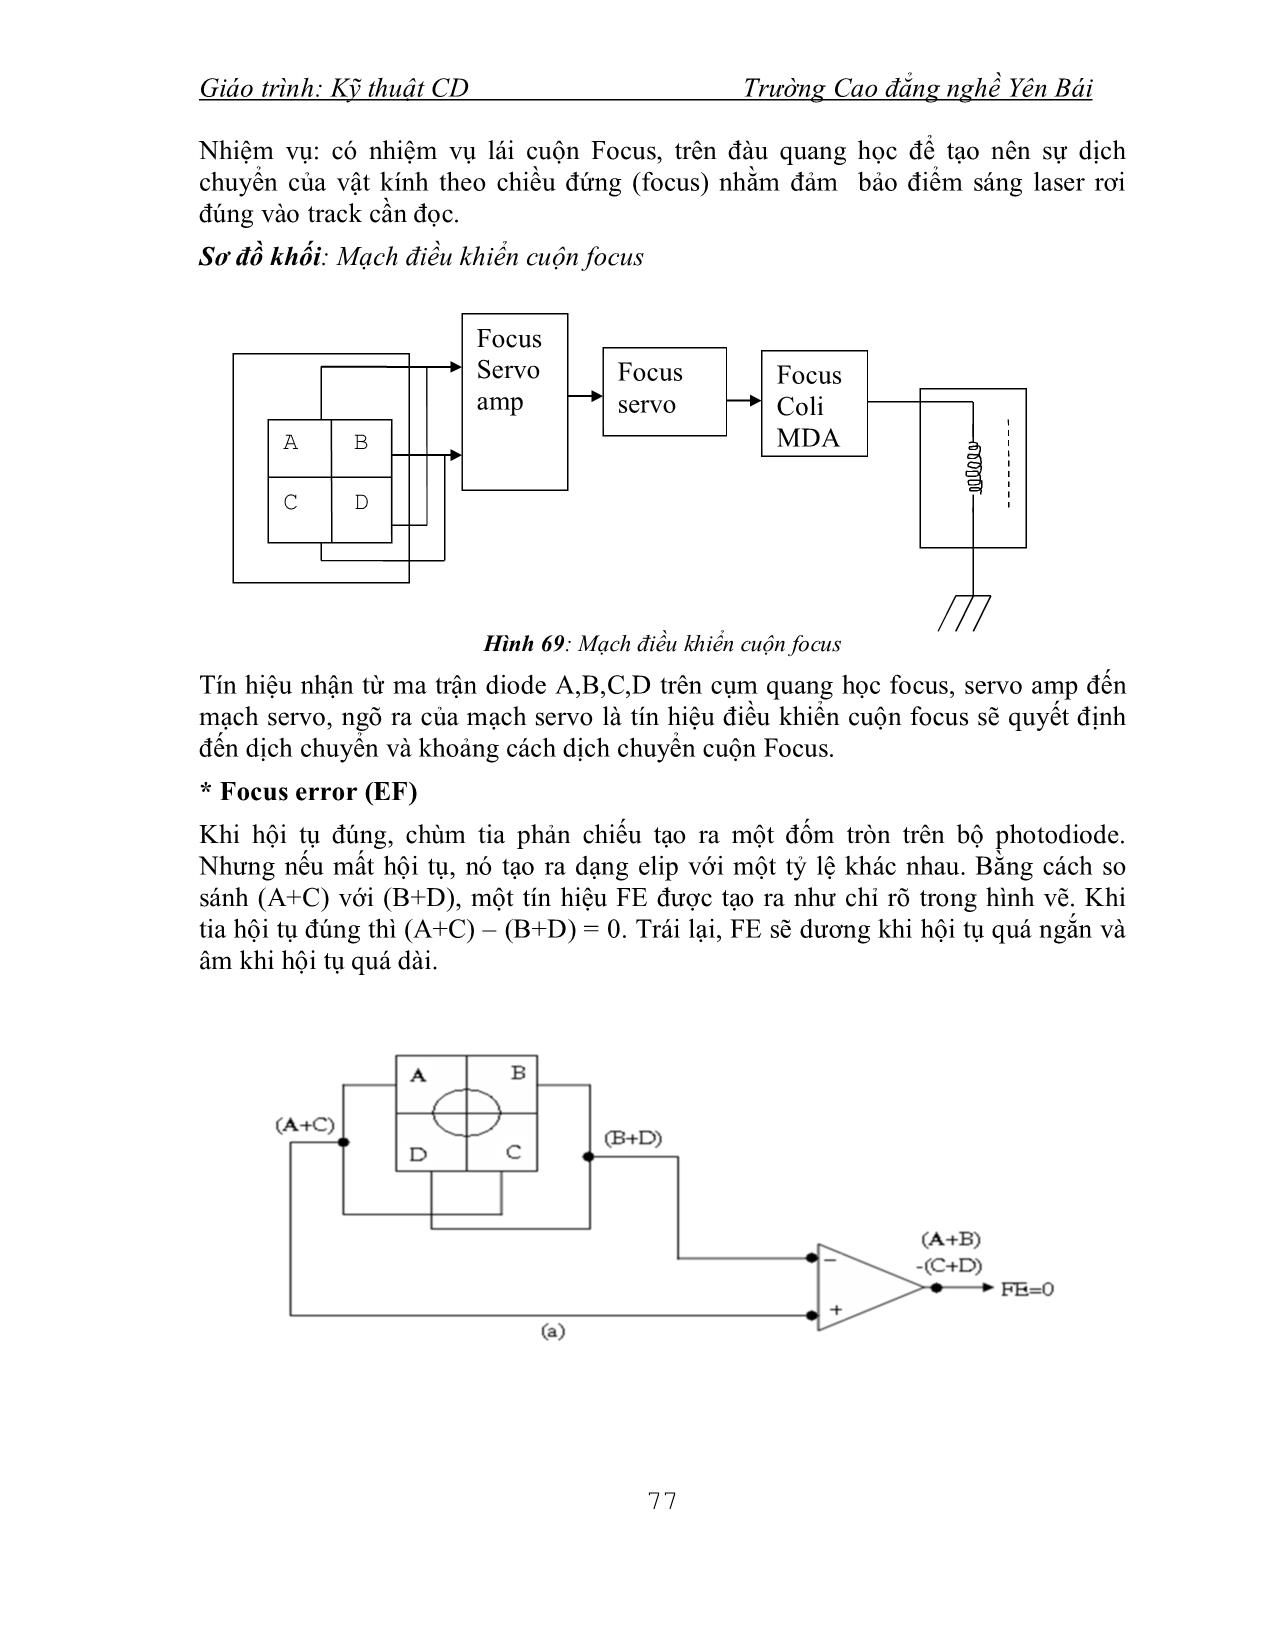 Giáo trình Kỹ thuật CD (Phần 2) trang 3